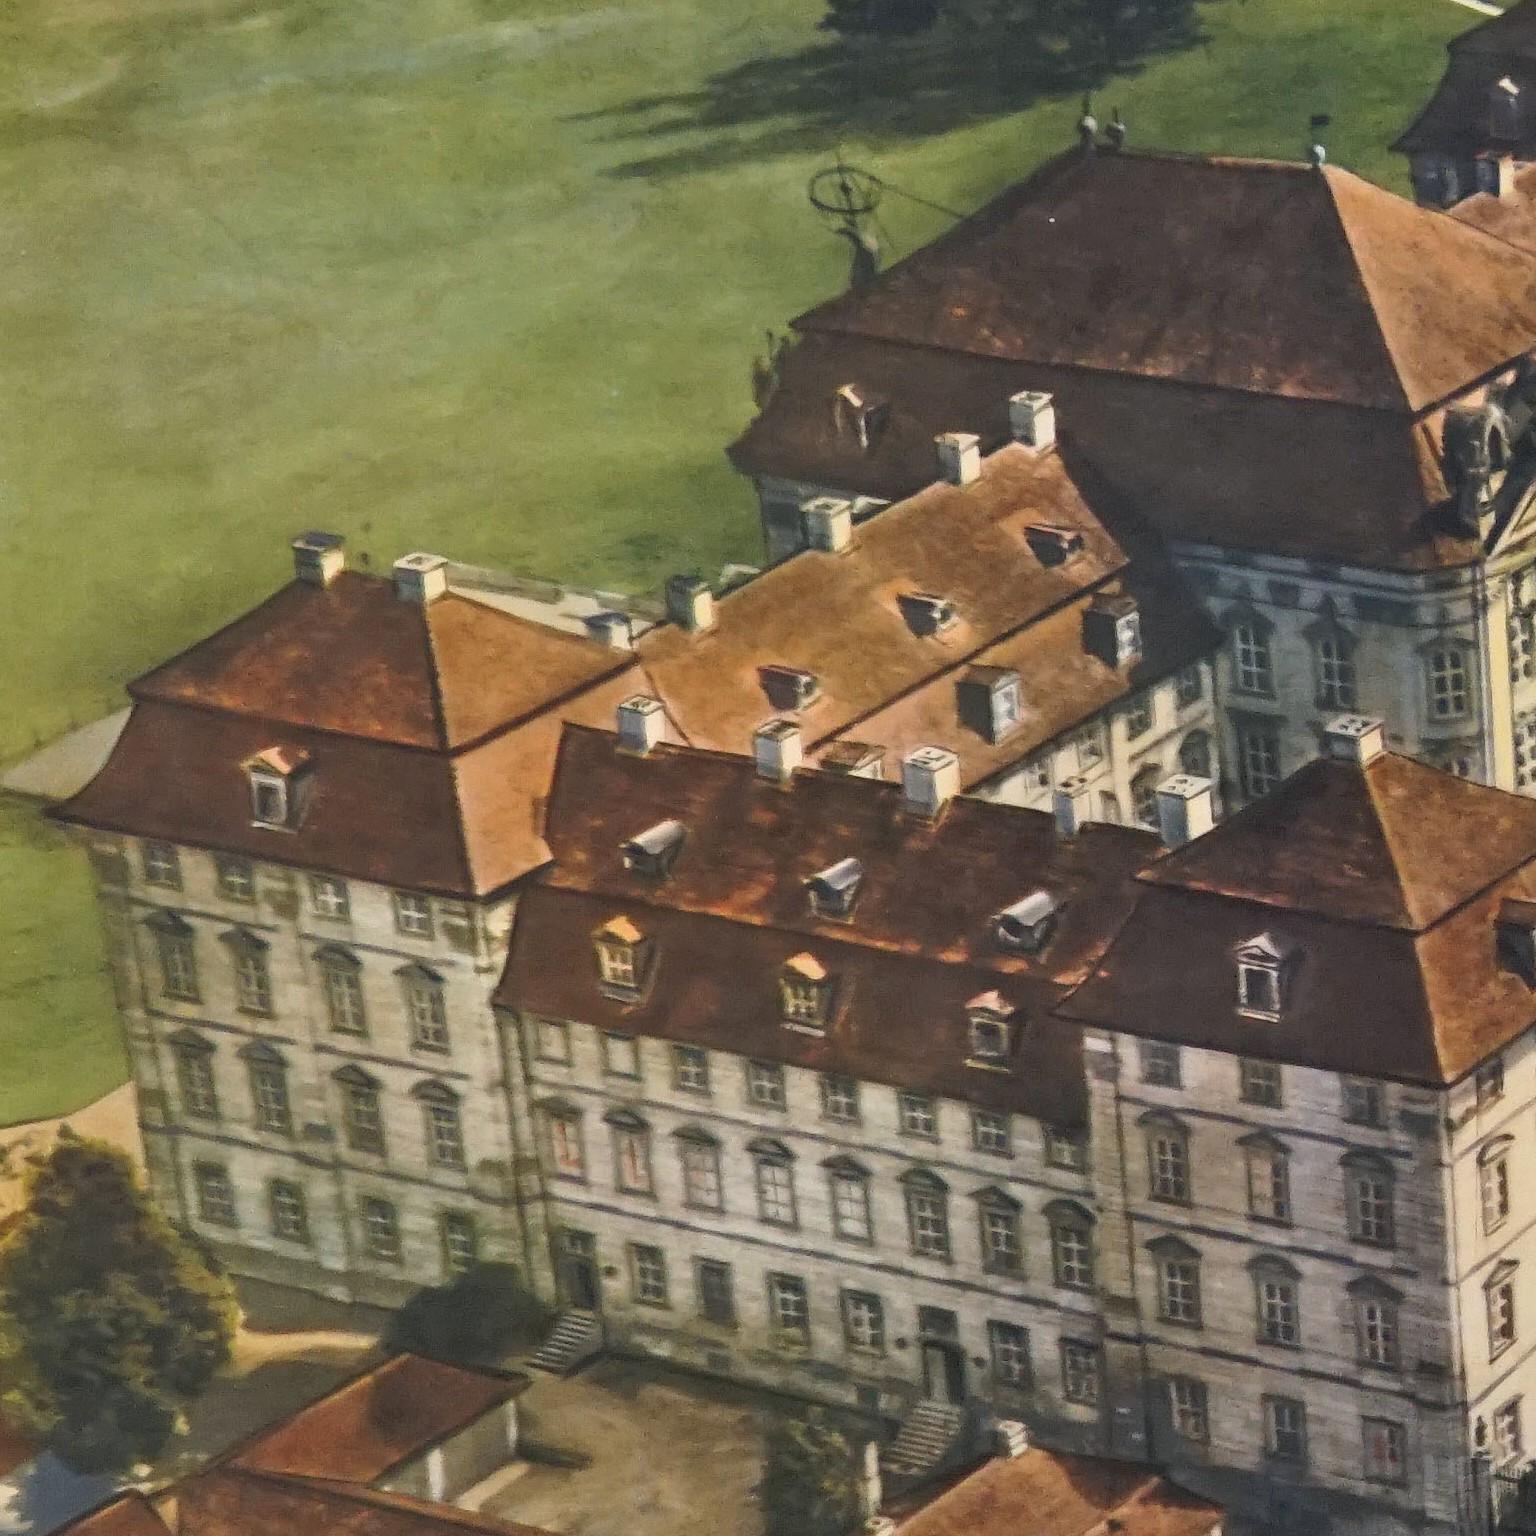 Le tableau mural à tirettes vintage représente un imposant château princier du 18e siècle. Publié par der Neue Schulmann, Stuttgart. Impression colorée sur papier renforcé par de la toile.
Mesures :
Largeur 90 cm (35.43 inch)
Hauteur 64 cm (25.20